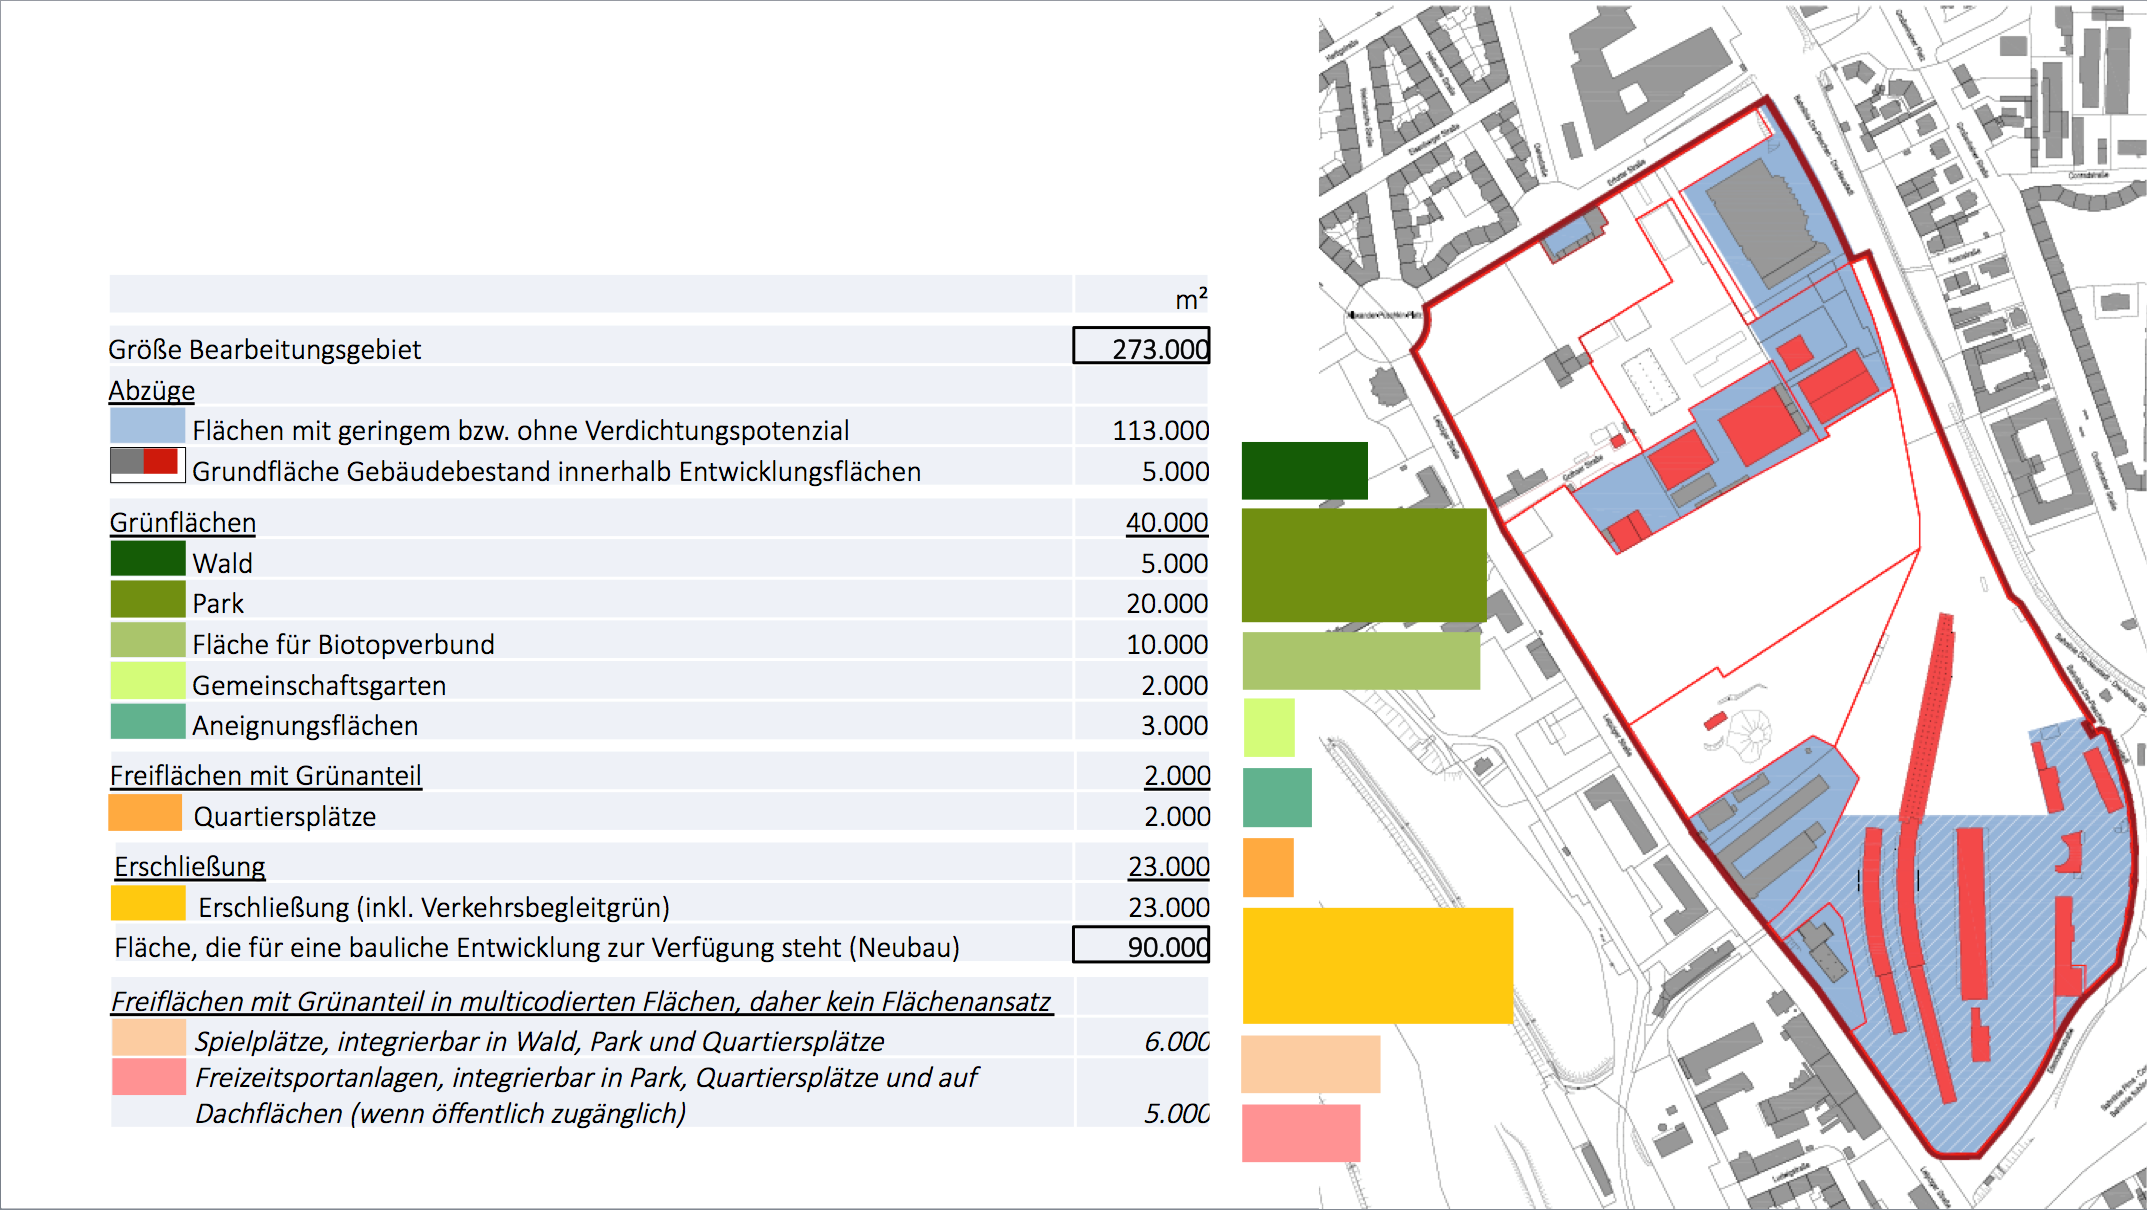 Die Abbildung zeigt eine Karte und Aufstellung der Gesamtfläche des Alten Leipziger Bahnhofs (273.000 Quadratmeter), abzüglich der Flächen mit geringem oder ohne Verdichtungspotential (113.000 Quadratmeter) und des Gebäudebestands (5.000 Quadratmeter), abzüglich der Grün-/Frei- und Erschließungsflächen (65.000 Quadratmeter) mit dem Ergebnis einer Fläche von 90.000 Quadratmeter potentieller Neubaufläche.